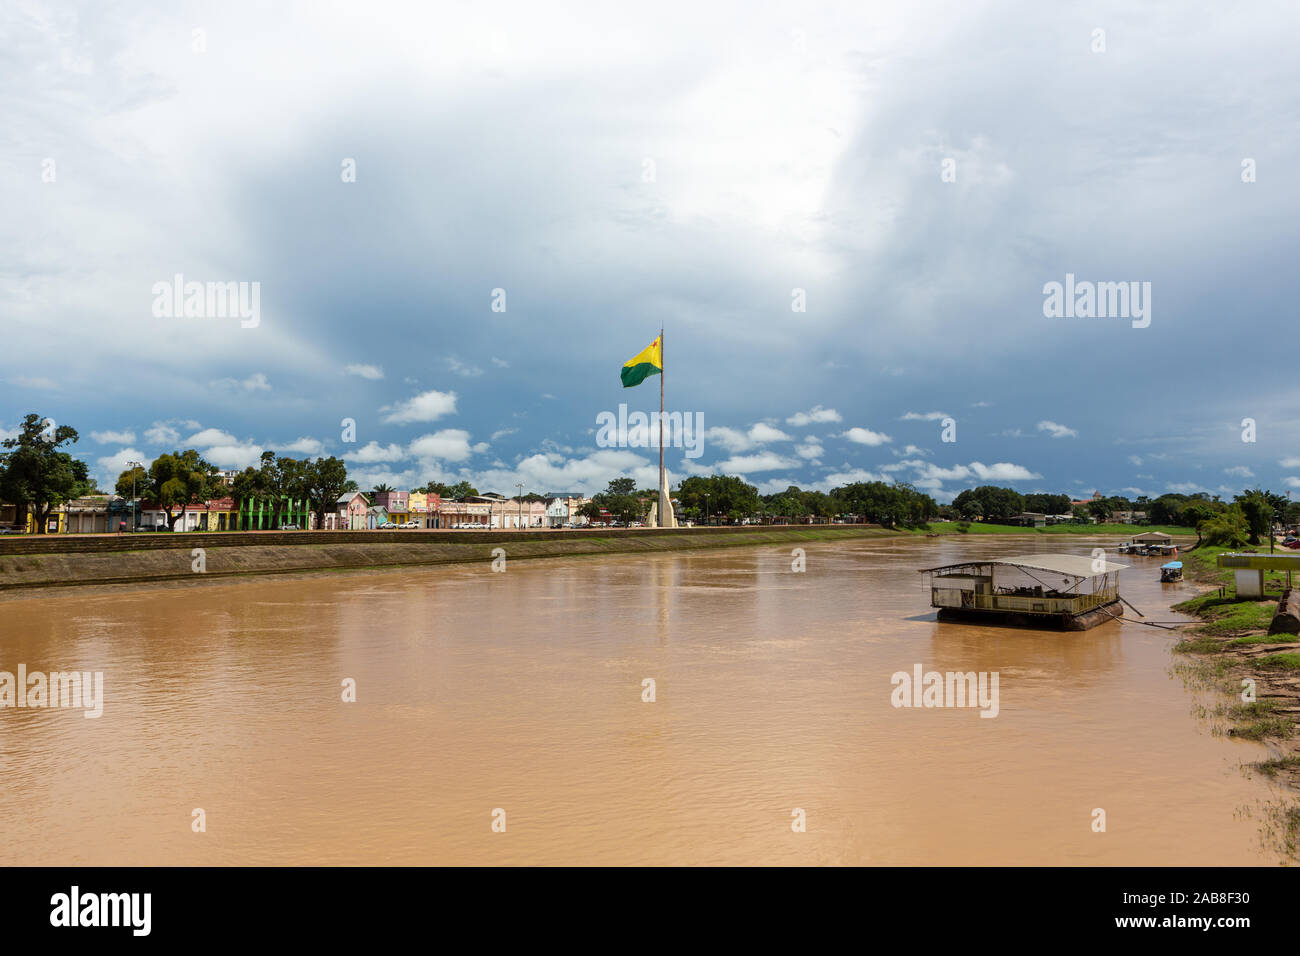 Wunderschöne Aussicht auf den Fluss Acre im amazonas und den 'Gameleira' Bürgersteig des Rio Branco Stadtzentrum an bewölkten Wintertagen. Konzept der Umwelt, Ökologie. Stockfoto